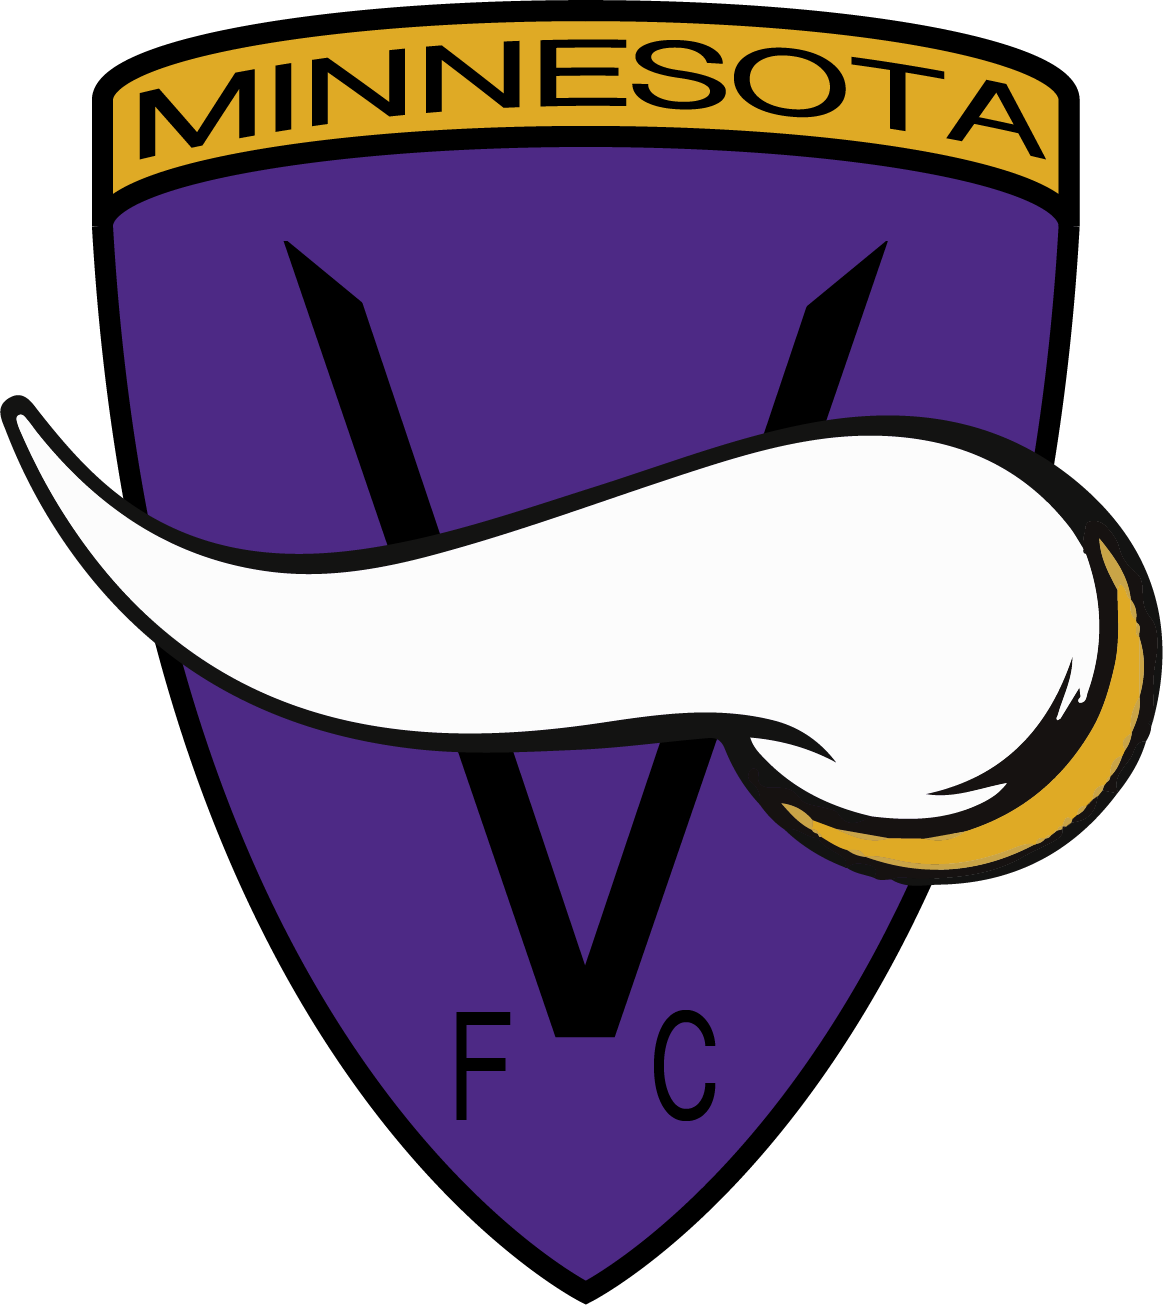 Minnesota Vikings Free Download Image PNG Image